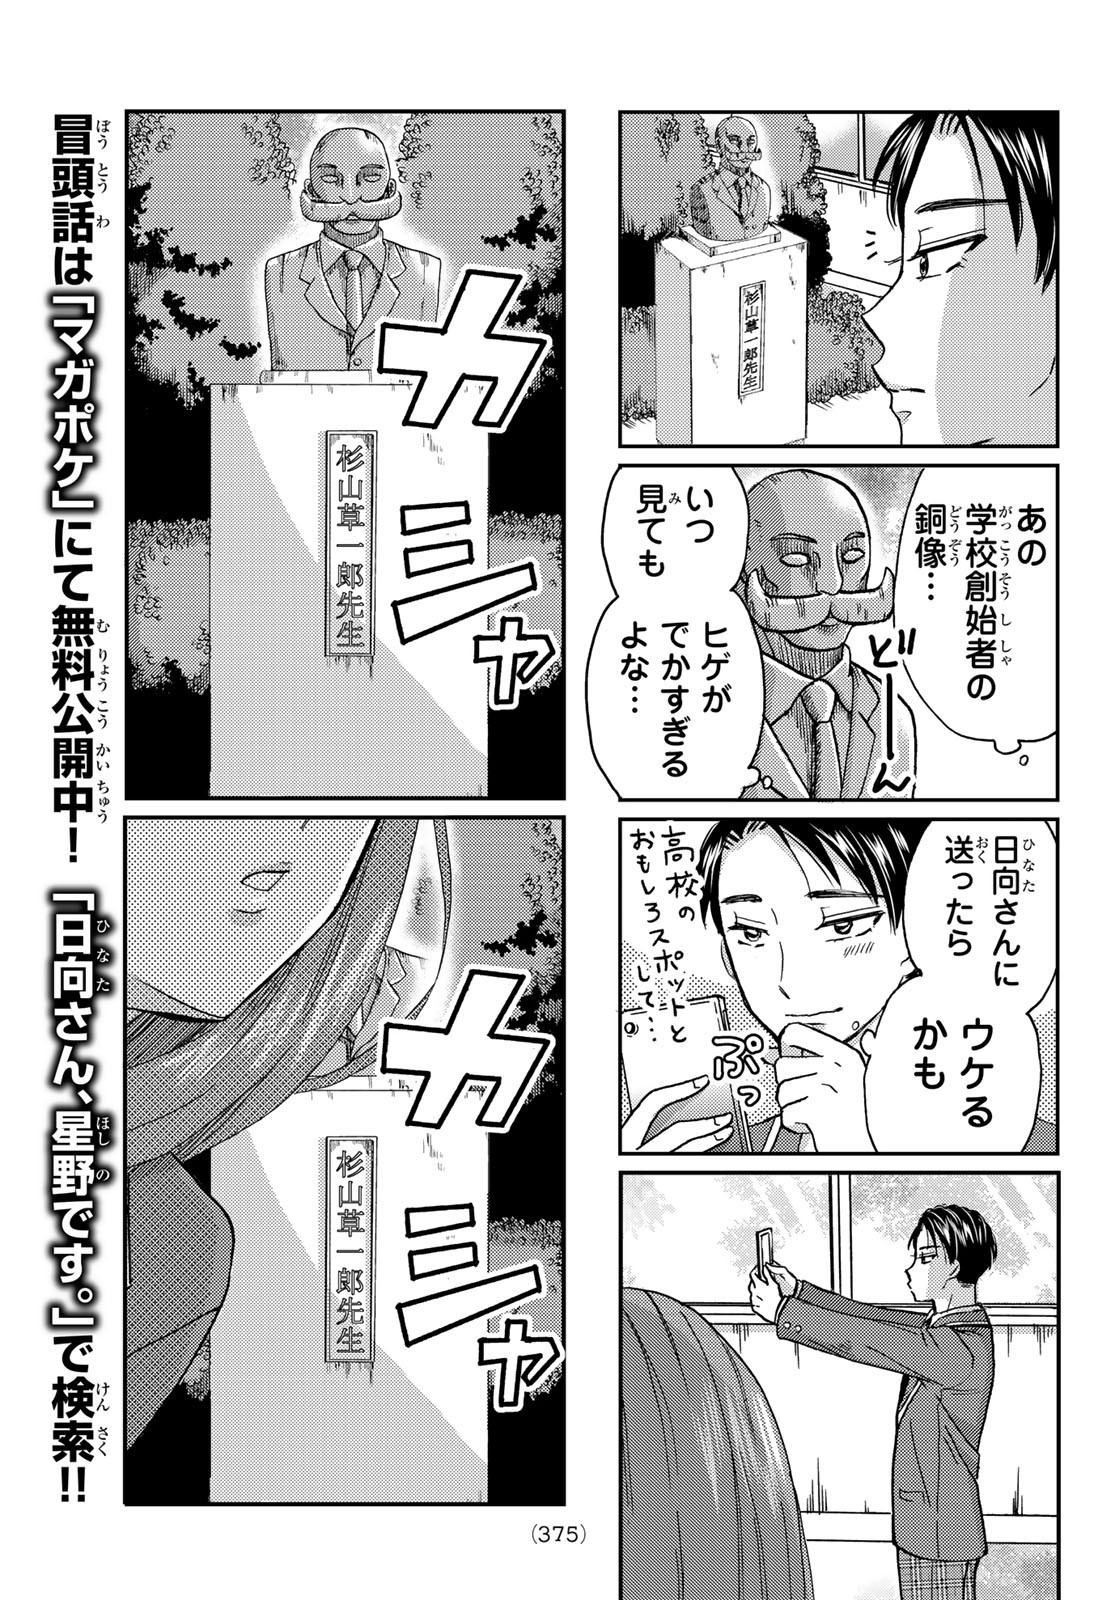 Hinata-san, Hoshino desu. - Chapter 007 - Page 3